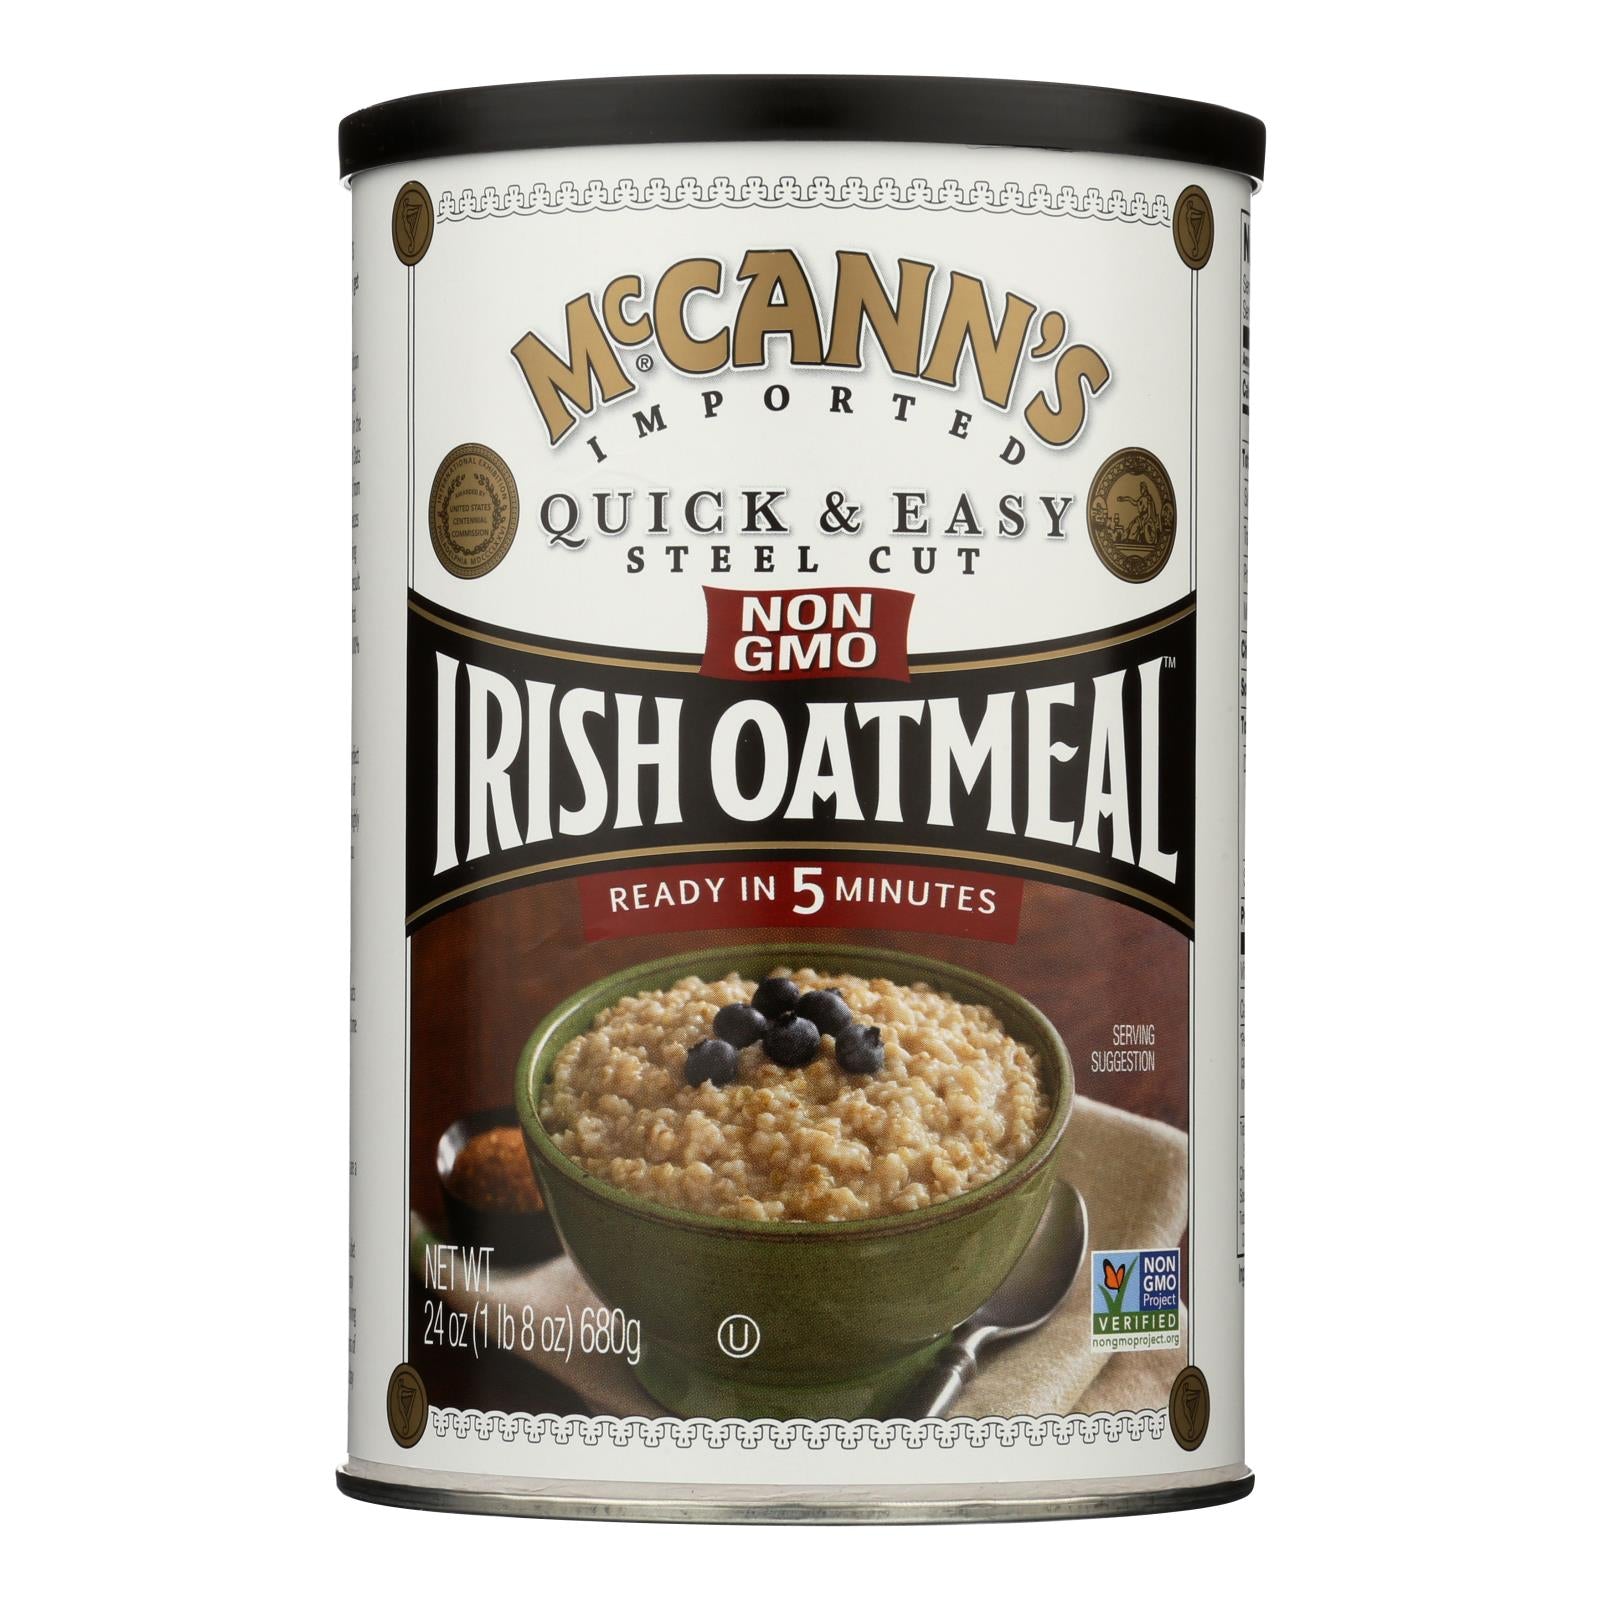 Gruau d'avoine irlandais Mccann's, McCann's Irish Oatmeal Quick and Easy Steel Cut - Caisse de 12 - 24 oz (paquet de 12)